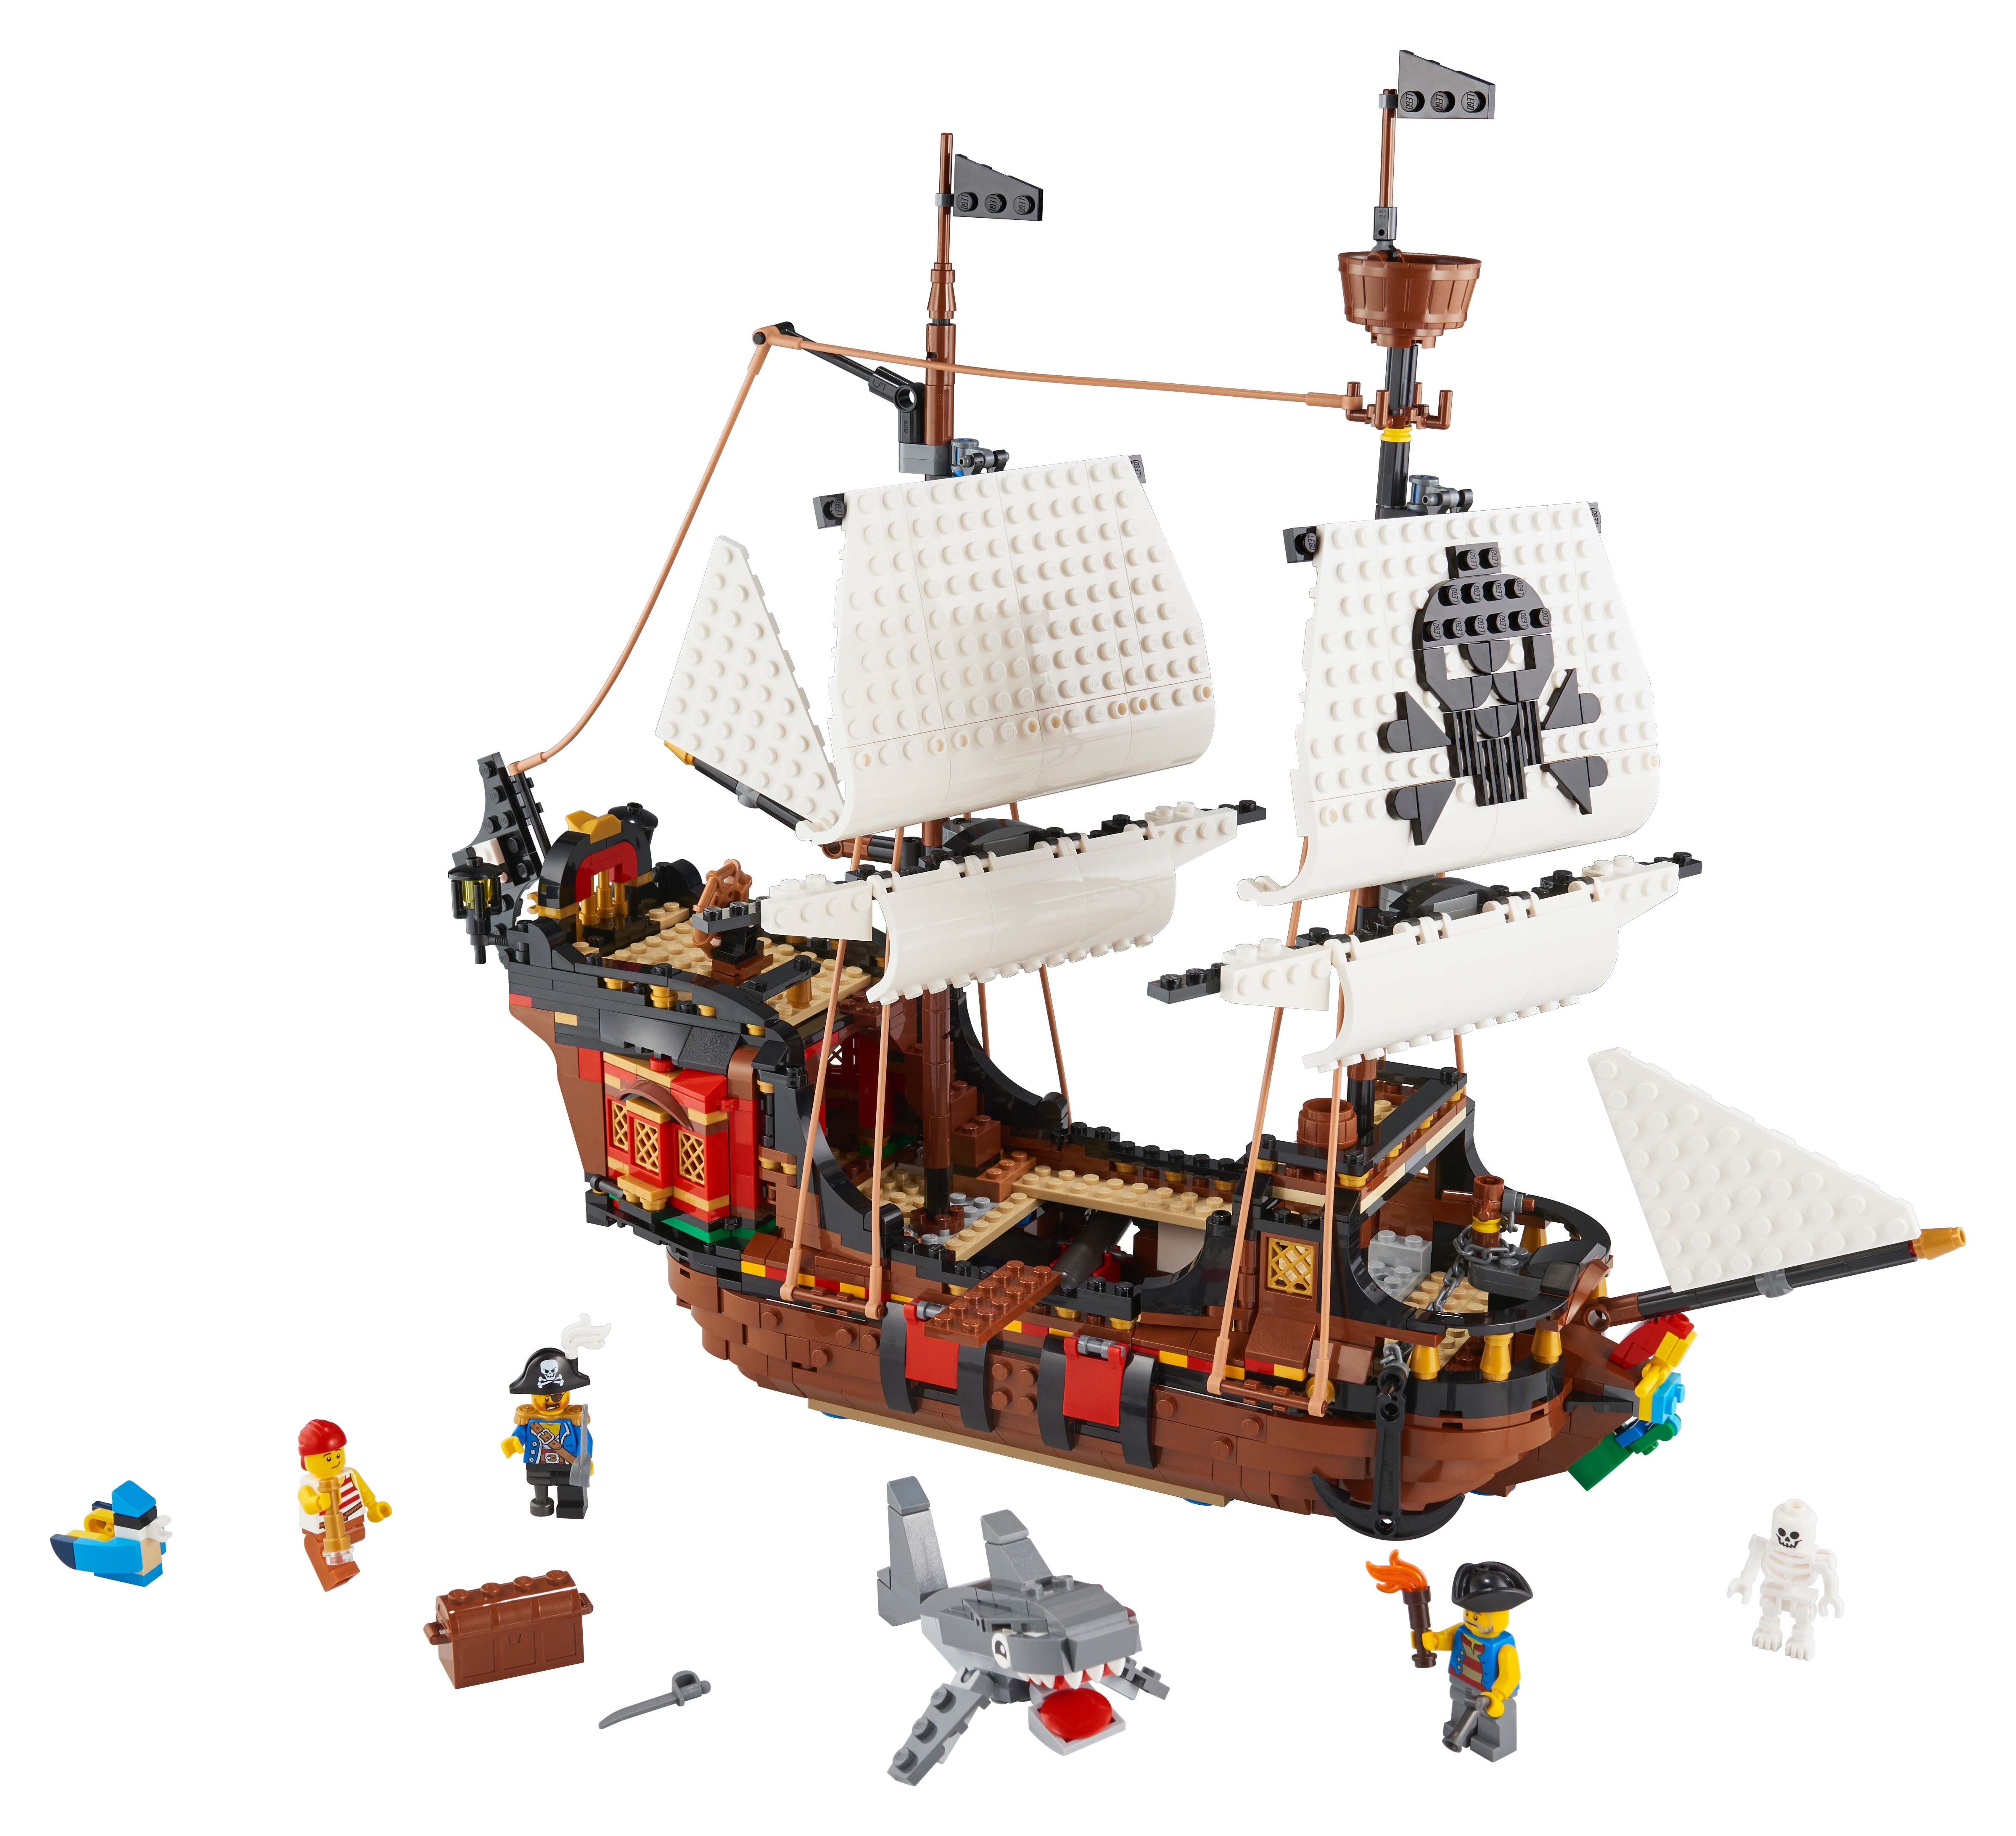 海賊船 31109 | クリエイター3in1 |レゴ®ストア公式オンラインショップJPで購入